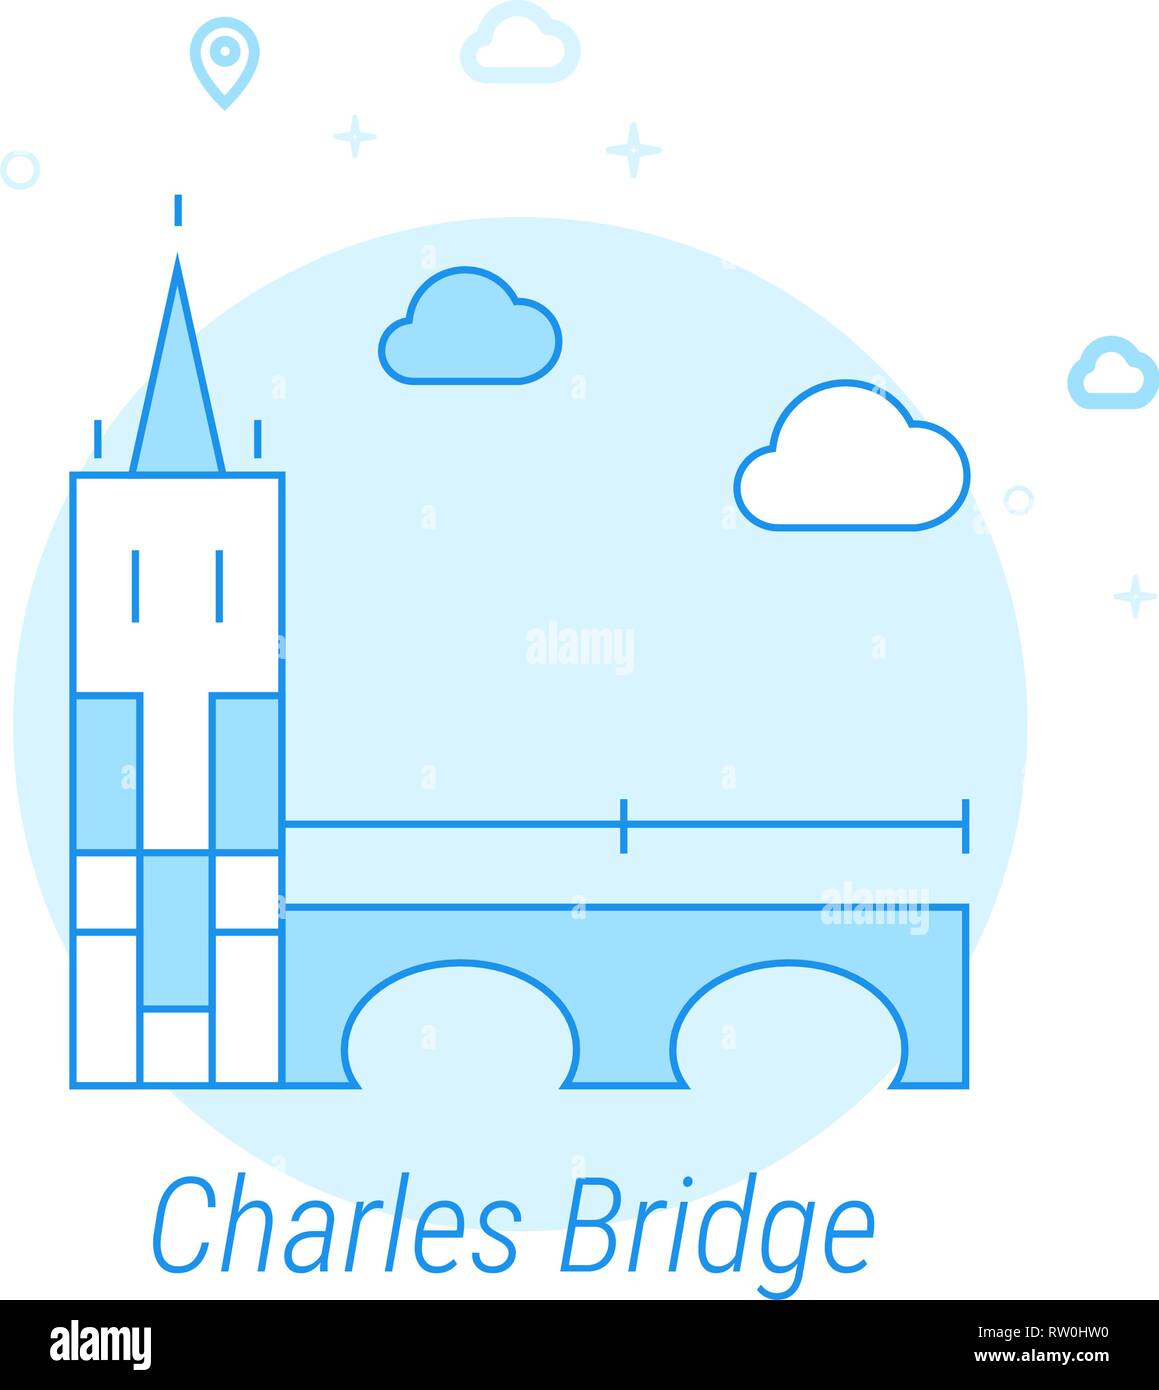 Charles Bridge, Prague Flat Vector Icon. Historical Landmarks Related Illustration. Light Flat Style. Blue Monochrome Design. Editable Stroke. Stock Vector